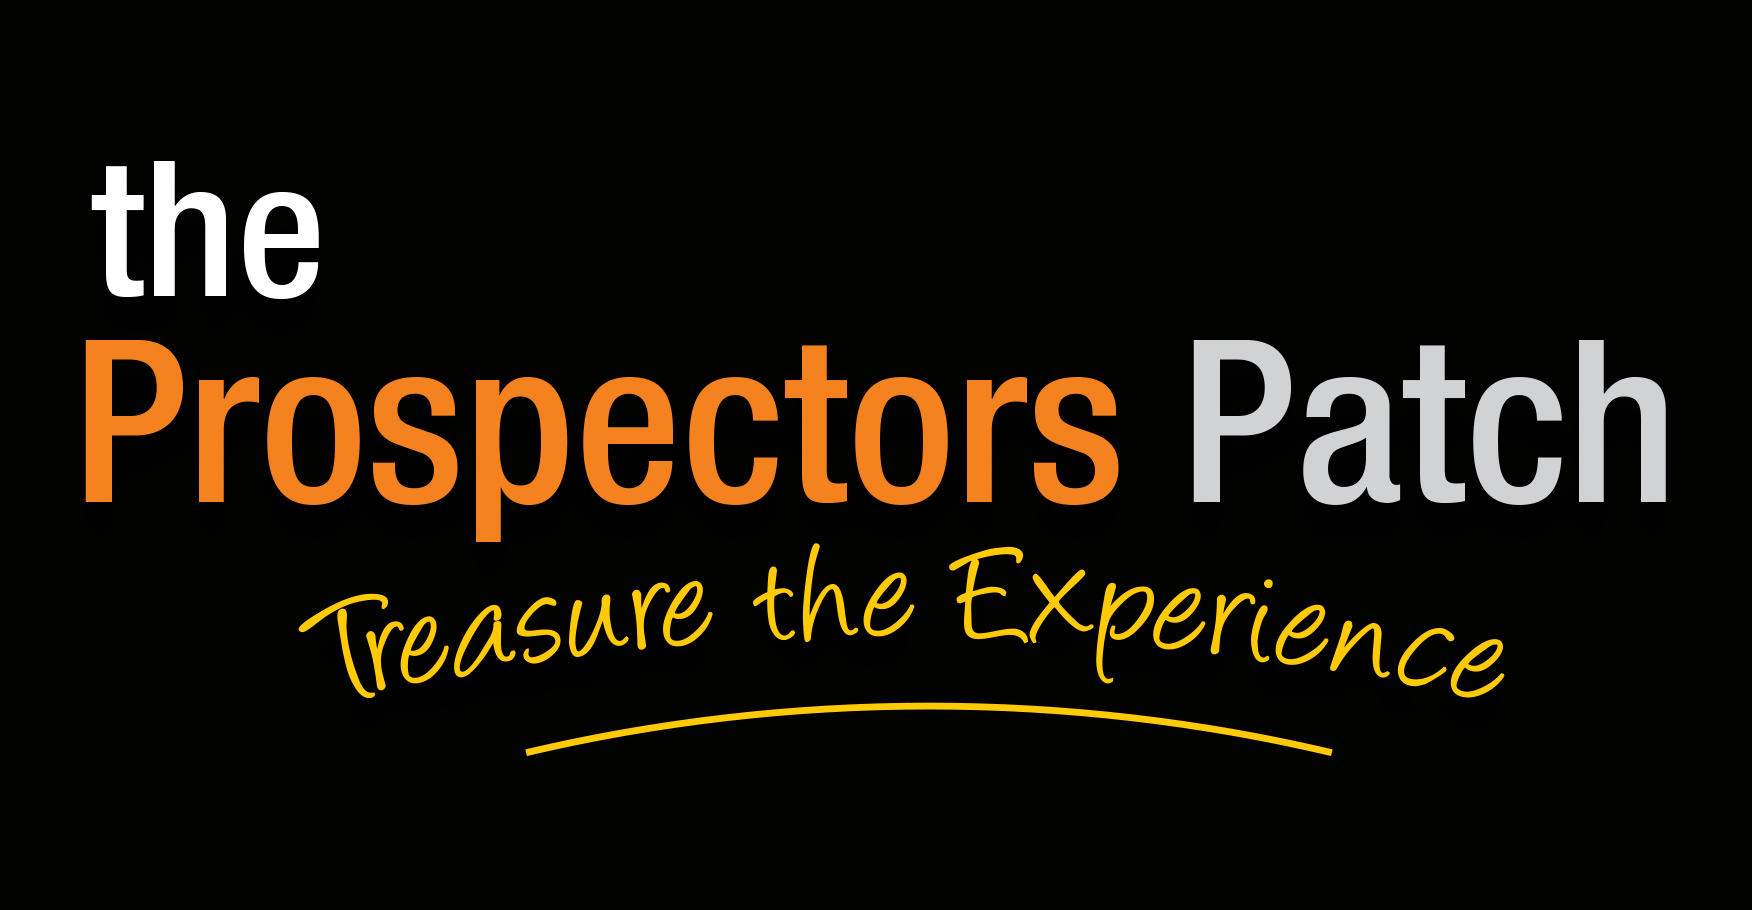 The Prospectors Patch